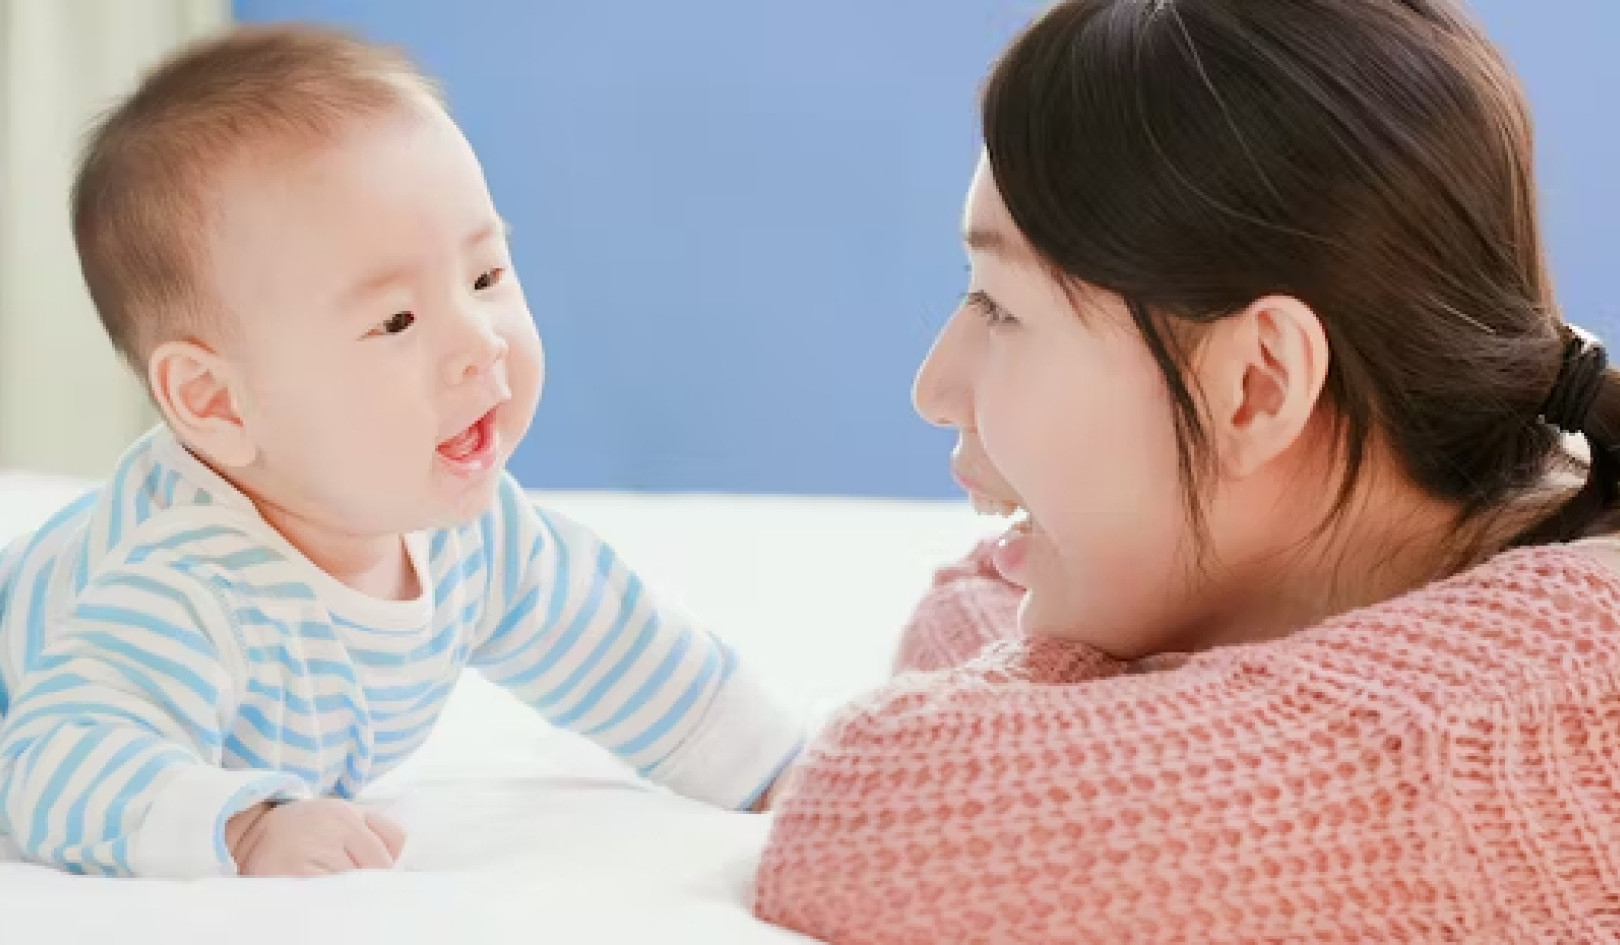 शिशुओं से बात करने से मस्तिष्क के विकास में योगदान हो सकता है - यहां बताया गया है कि इसे कैसे करें